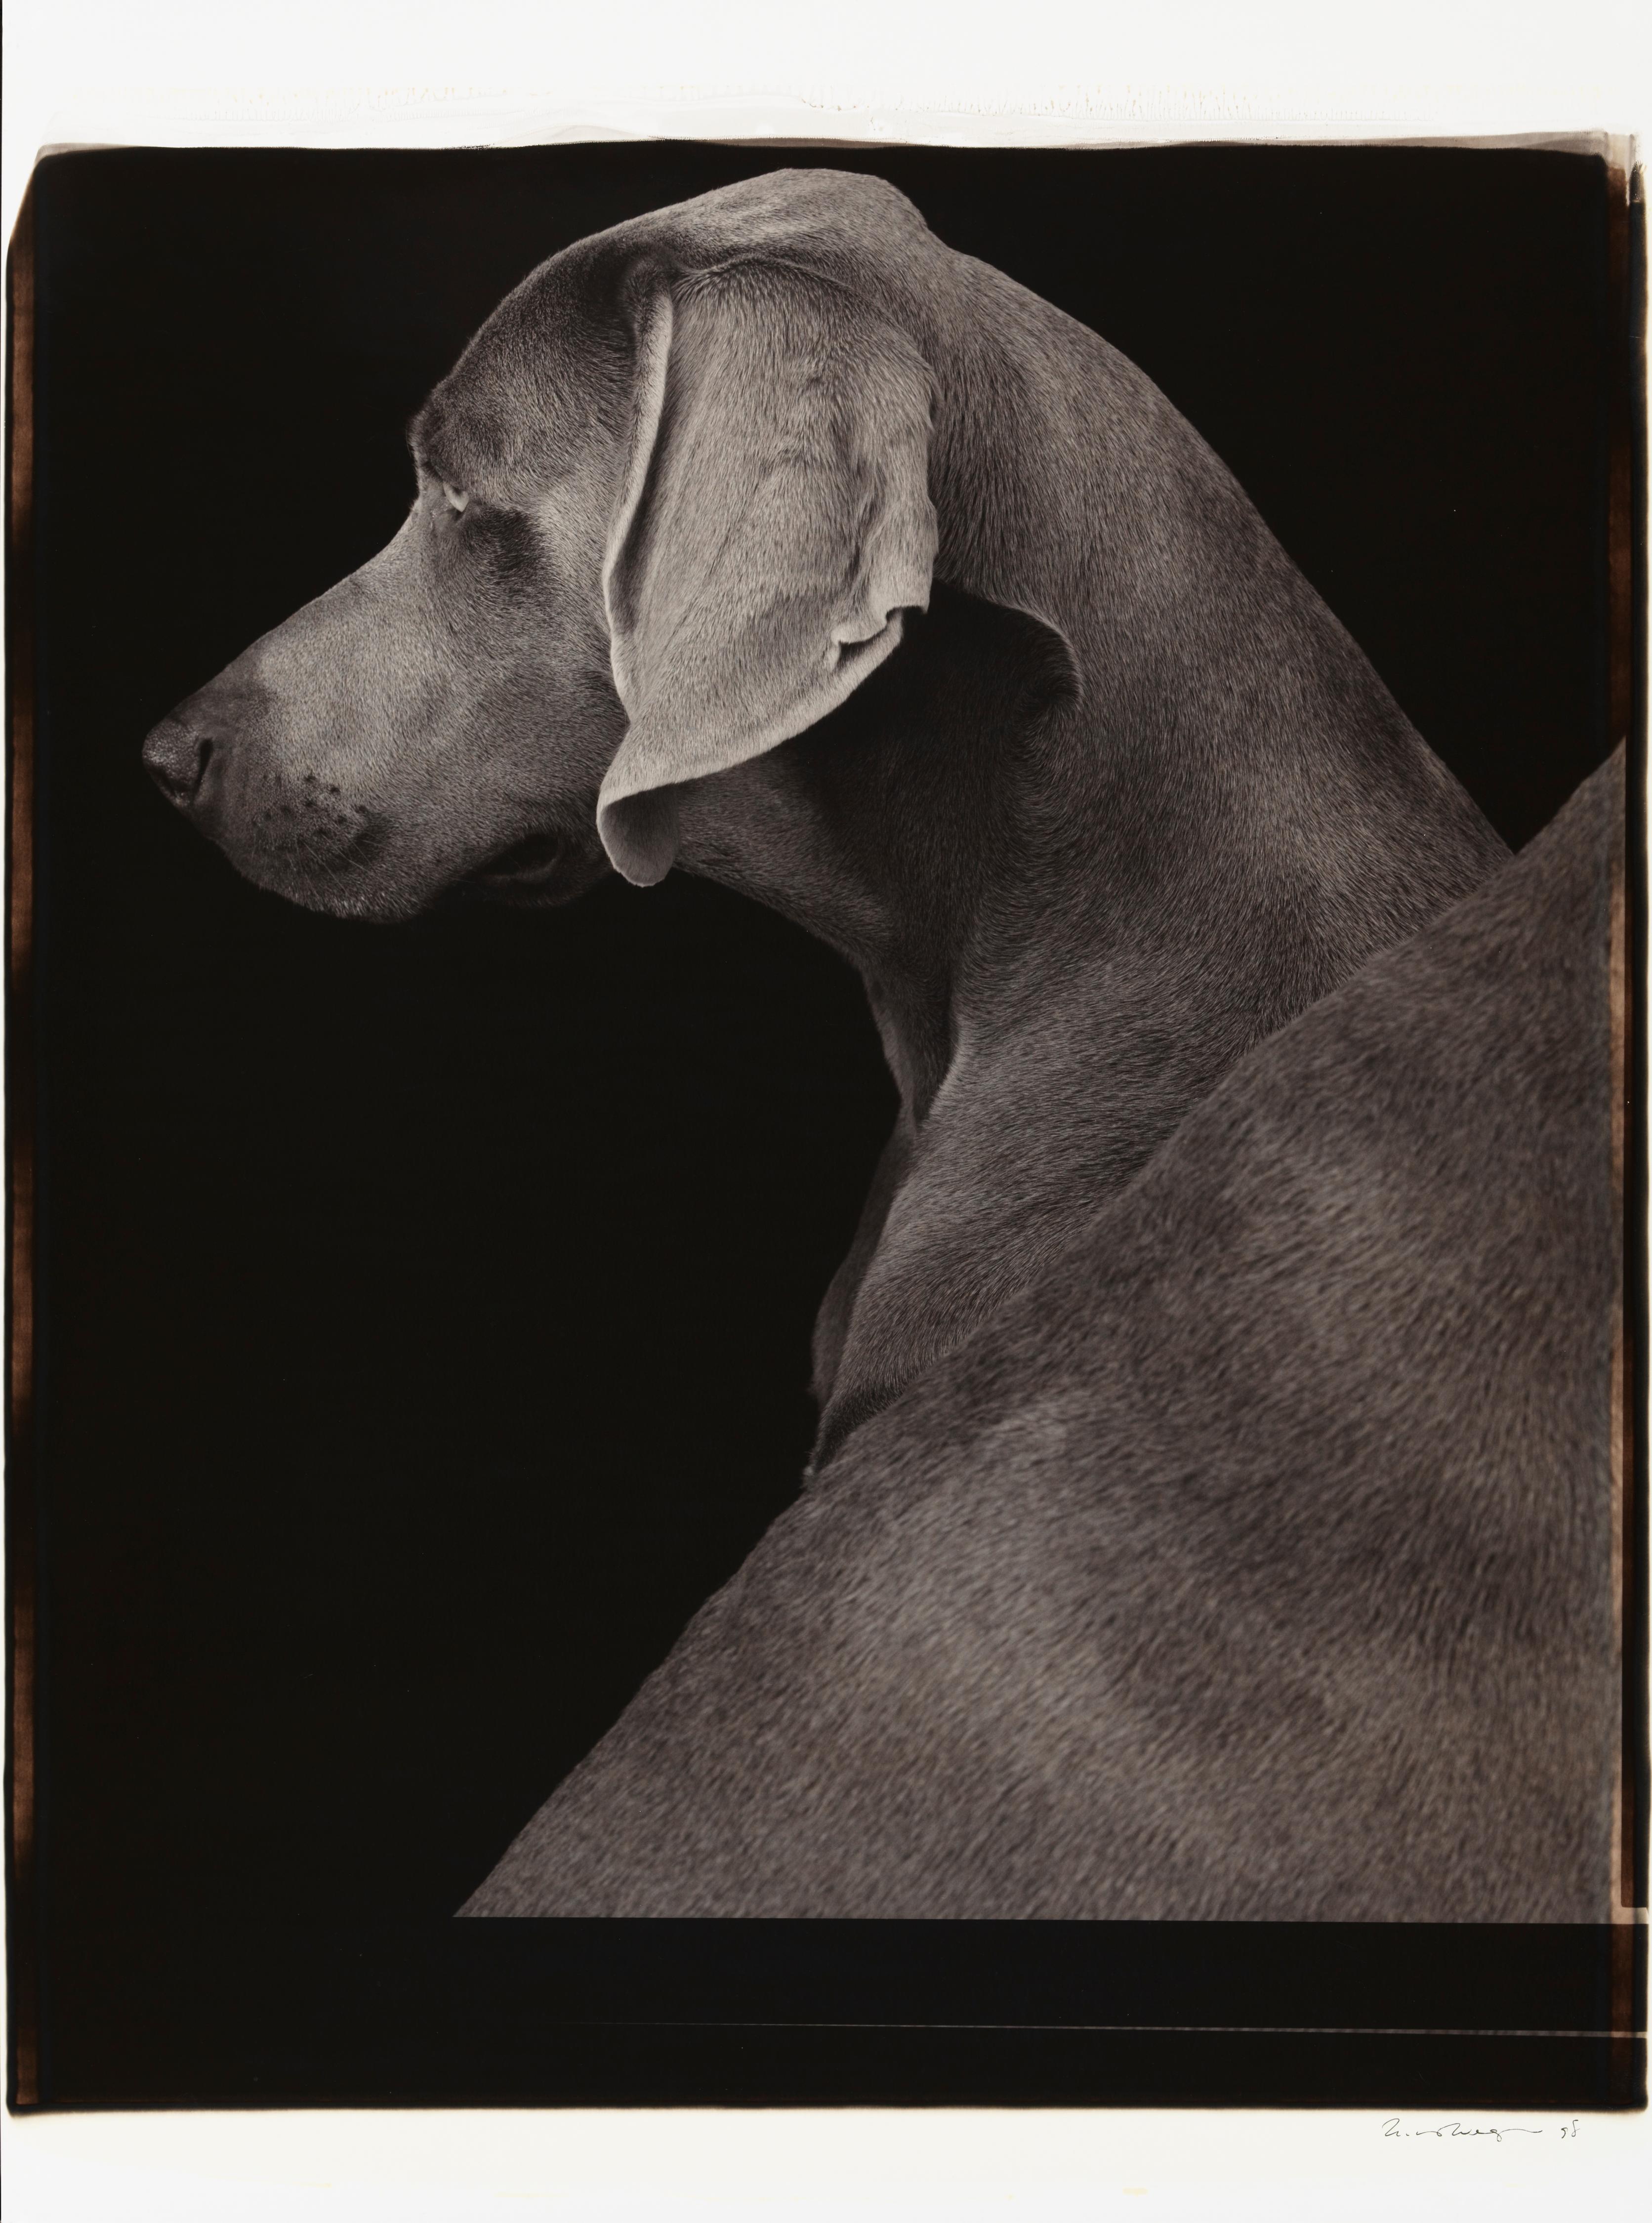 Seitenansichten - William Wegman (Farbfotografie)
Signiert und beschriftet mit Titel
Einzigartiger Schwarz-Weiß-Polaroid-Druck, gedruckt 1998
24 x 20 Zoll

Die Hunde, die mit Perücken, Kostümen und Requisiten ausgestattet sind, zeigen eine breite